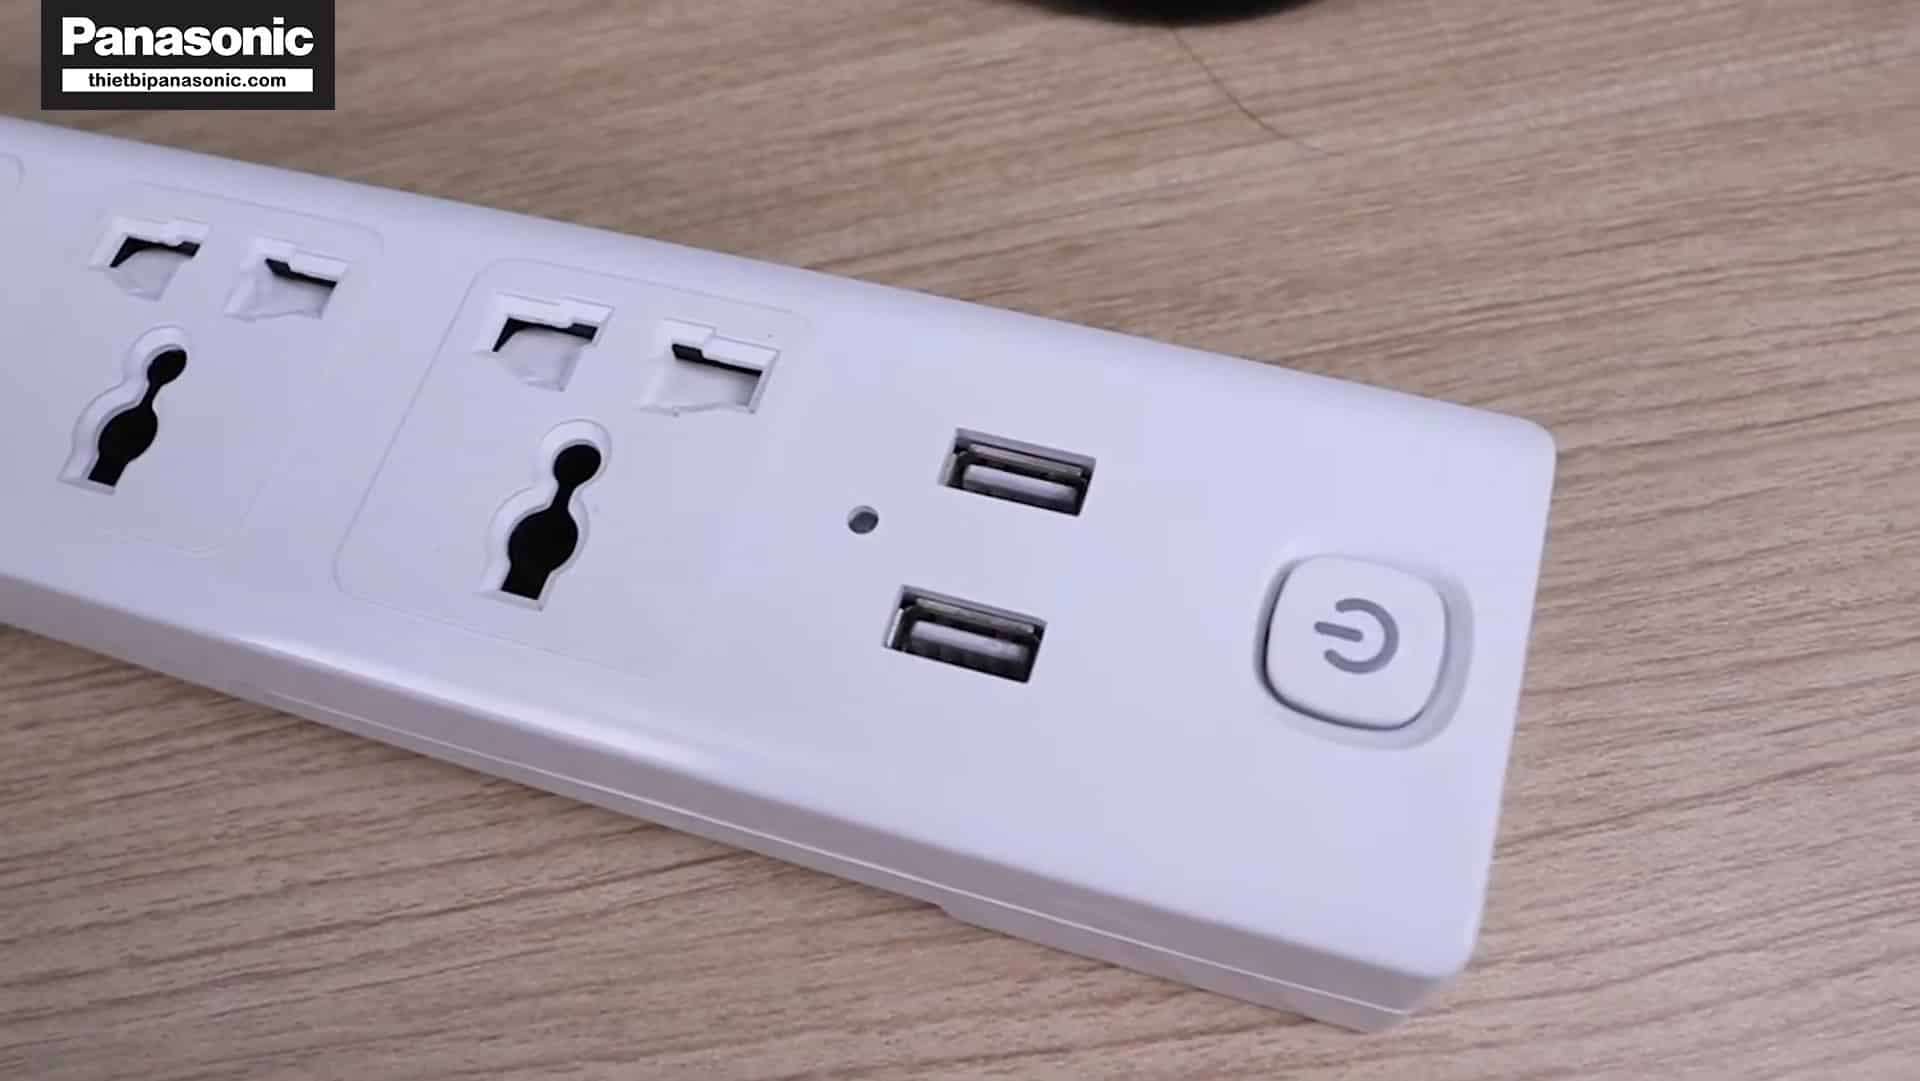 Đèn báo của Ổ cắm USB sẽ báo màu xanh khi thiết bị di động được sạc đầy pin